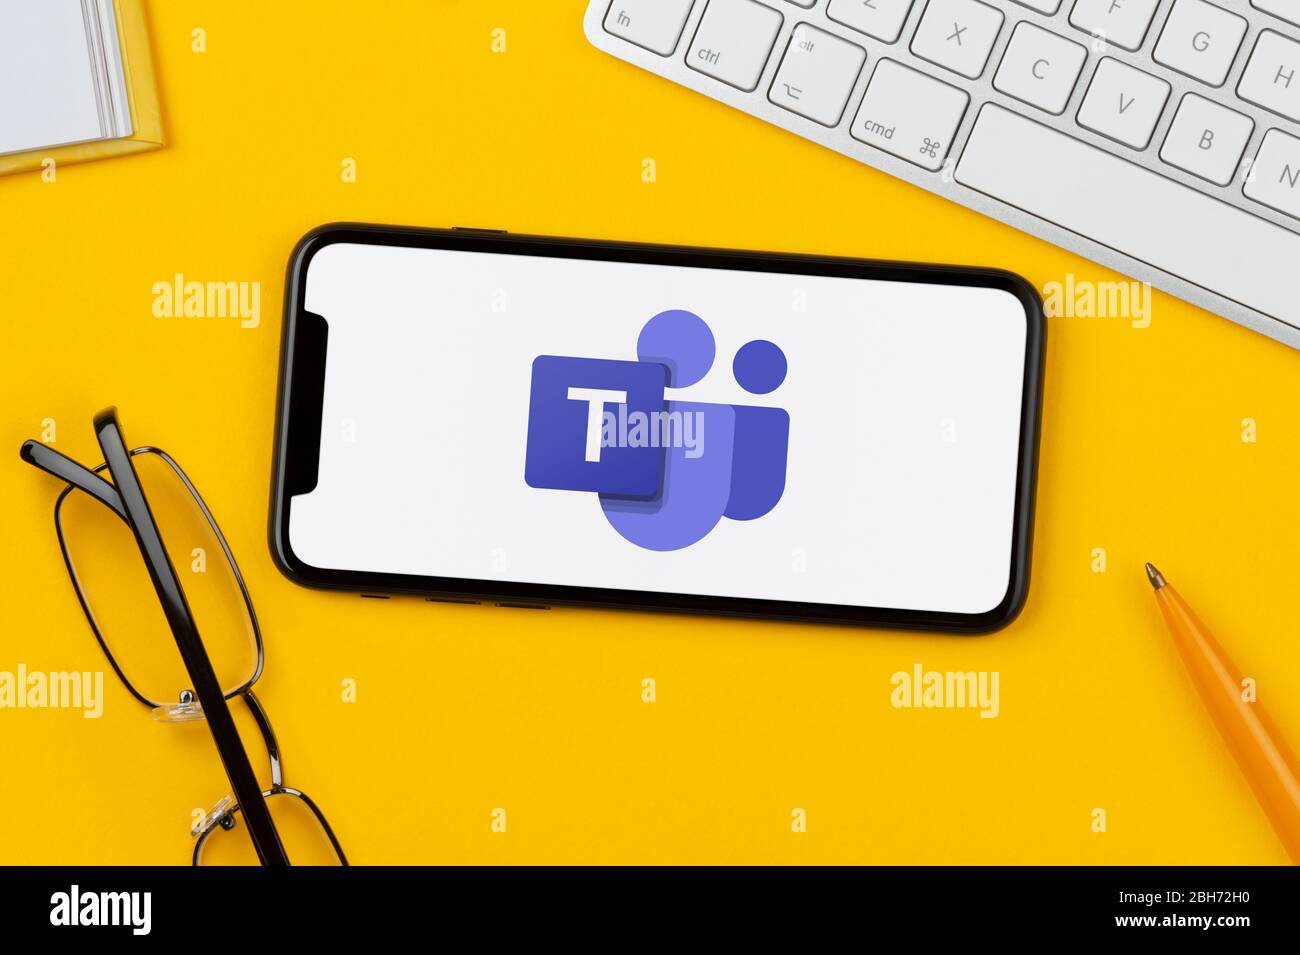 Ein Smartphone mit dem Microsoft Teams Logo liegt auf einem gelben Hintergrund zusammen mit Tastatur, Brille, Stift und Buch (nur für redaktionelle Zwecke). Stockfoto